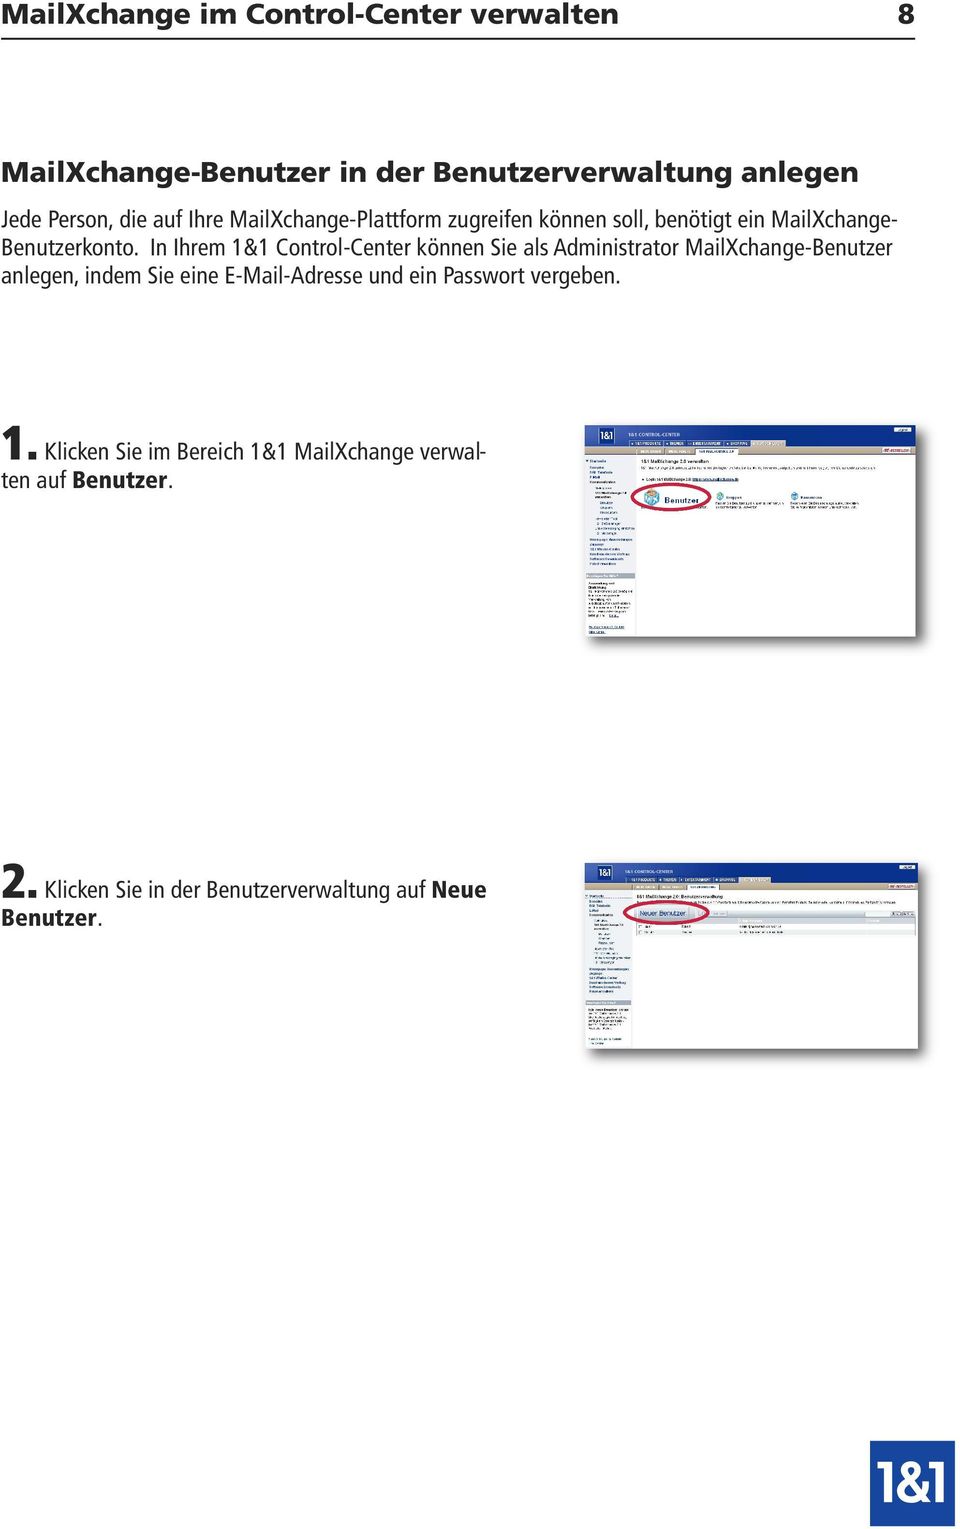 In Ihrem 1&1 Control-Center können Sie als Administrator MailXchange-Benutzer anlegen, indem Sie eine E-Mail-Adresse